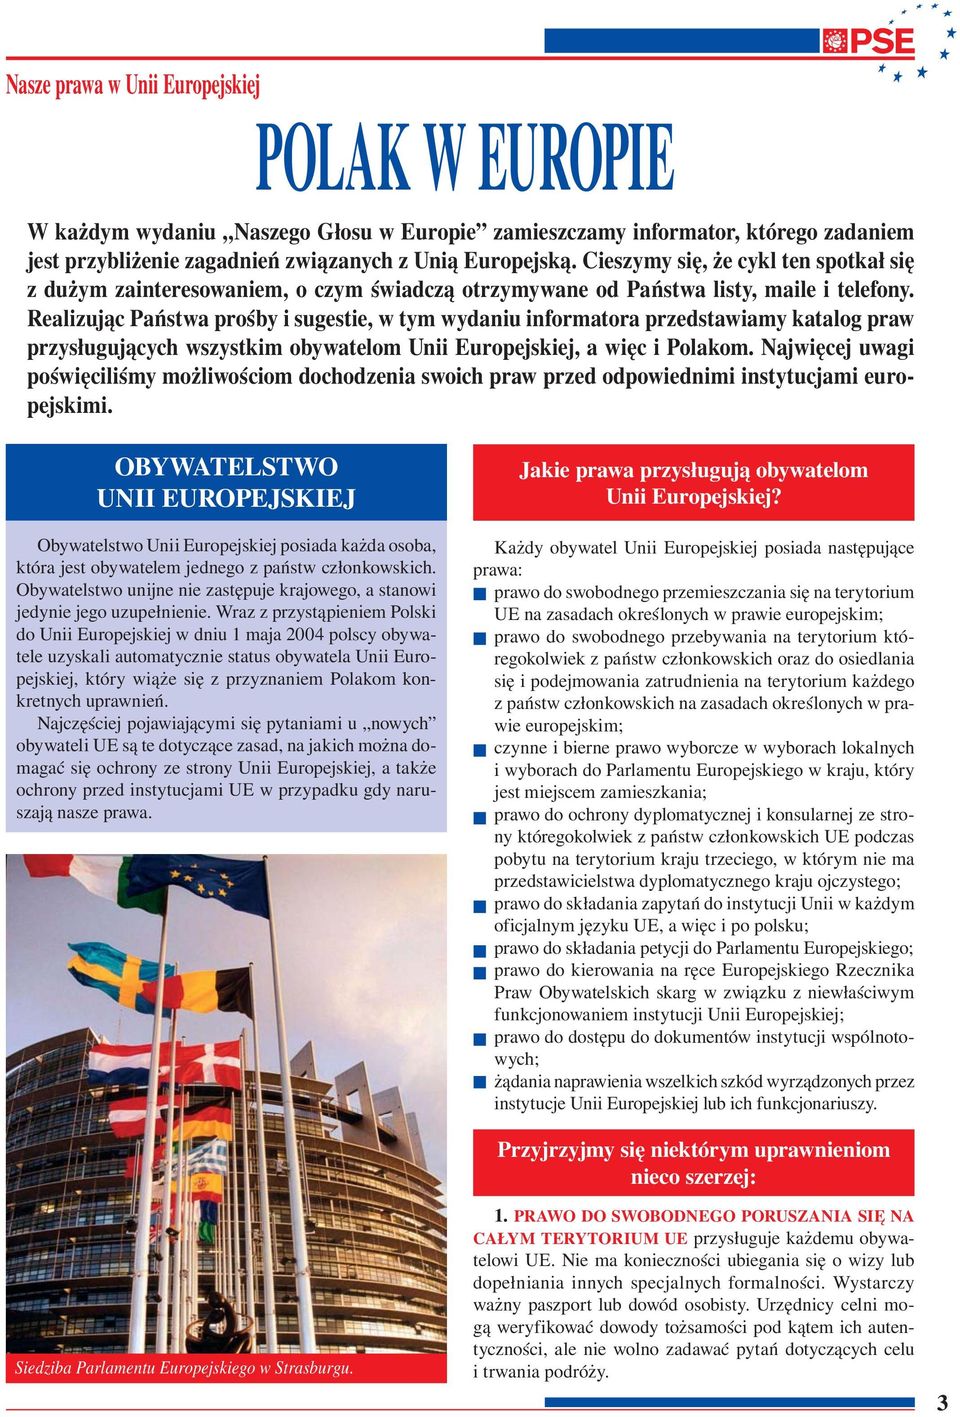 Realizując Państwa prośby i sugestie, w tym wydaniu informatora przedstawiamy katalog praw przysługujących wszystkim obywatelom Unii Europejskiej, a więc i Polakom.